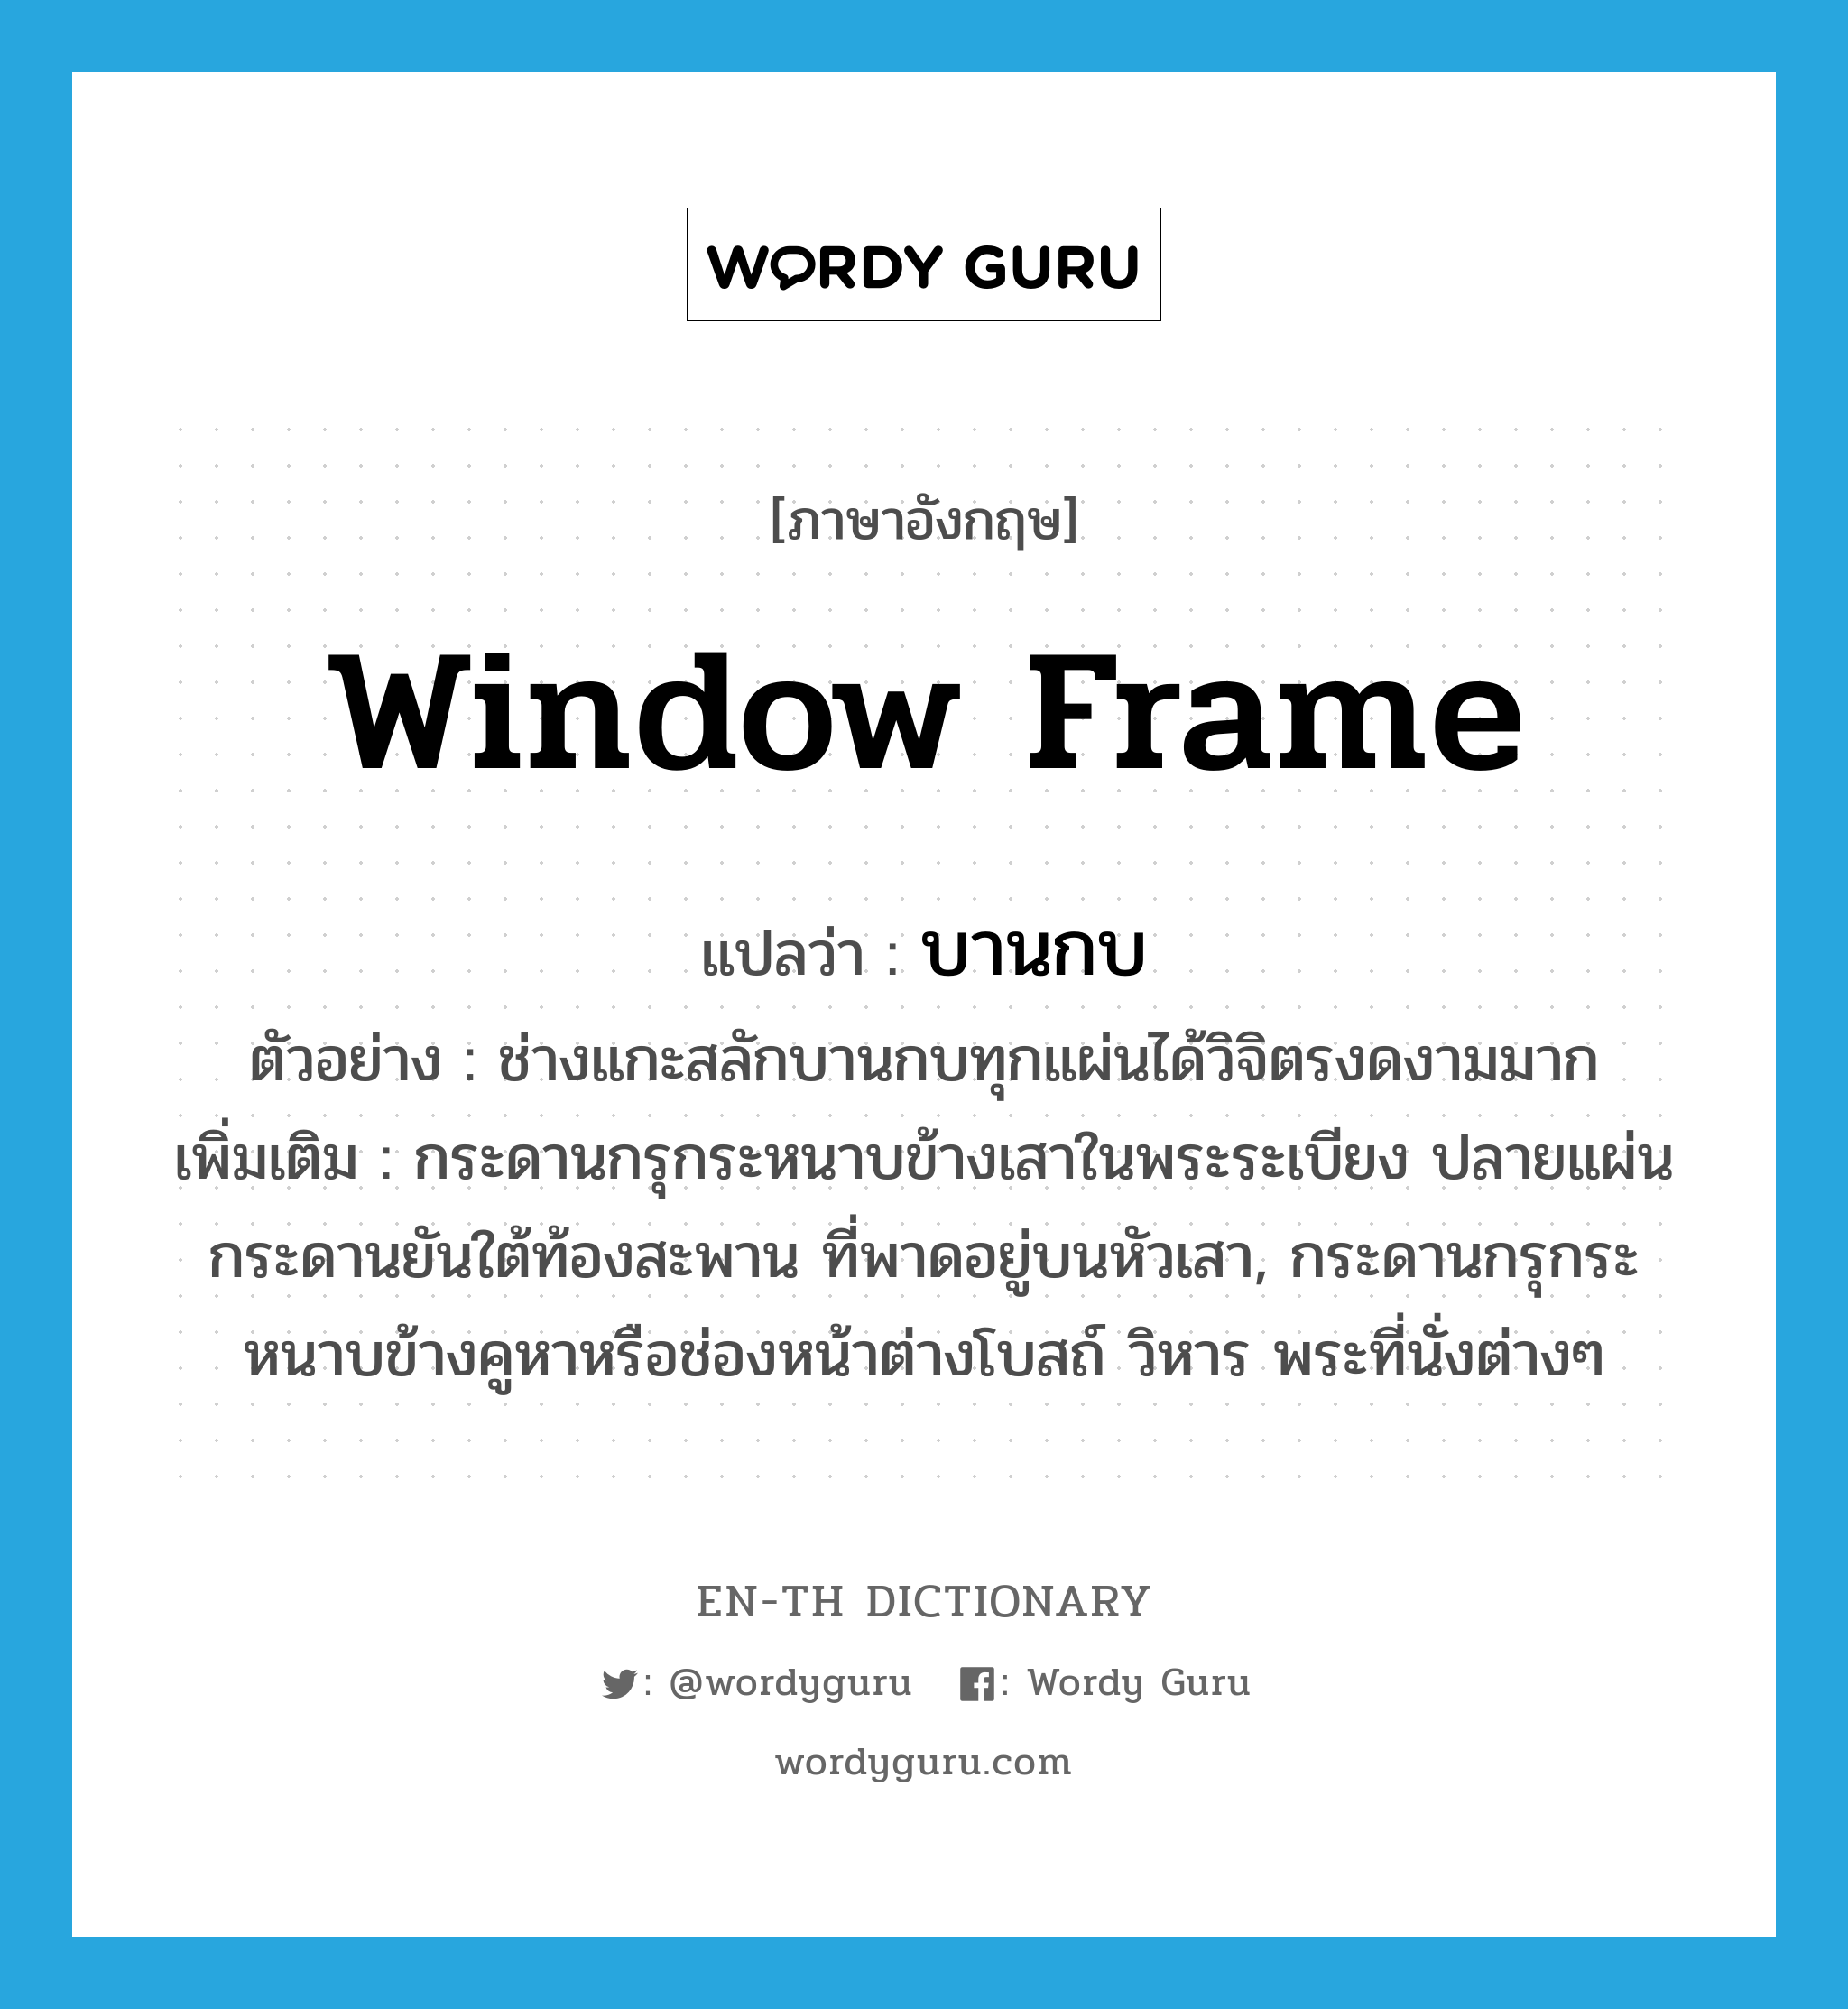 window frame แปลว่า?, คำศัพท์ภาษาอังกฤษ window frame แปลว่า บานกบ ประเภท N ตัวอย่าง ช่างแกะสลักบานกบทุกแผ่นได้วิจิตรงดงามมาก เพิ่มเติม กระดานกรุกระหนาบข้างเสาในพระระเบียง ปลายแผ่นกระดานยันใต้ท้องสะพาน ที่พาดอยู่บนหัวเสา, กระดานกรุกระหนาบข้างคูหาหรือช่องหน้าต่างโบสถ์ วิหาร พระที่นั่งต่างๆ หมวด N